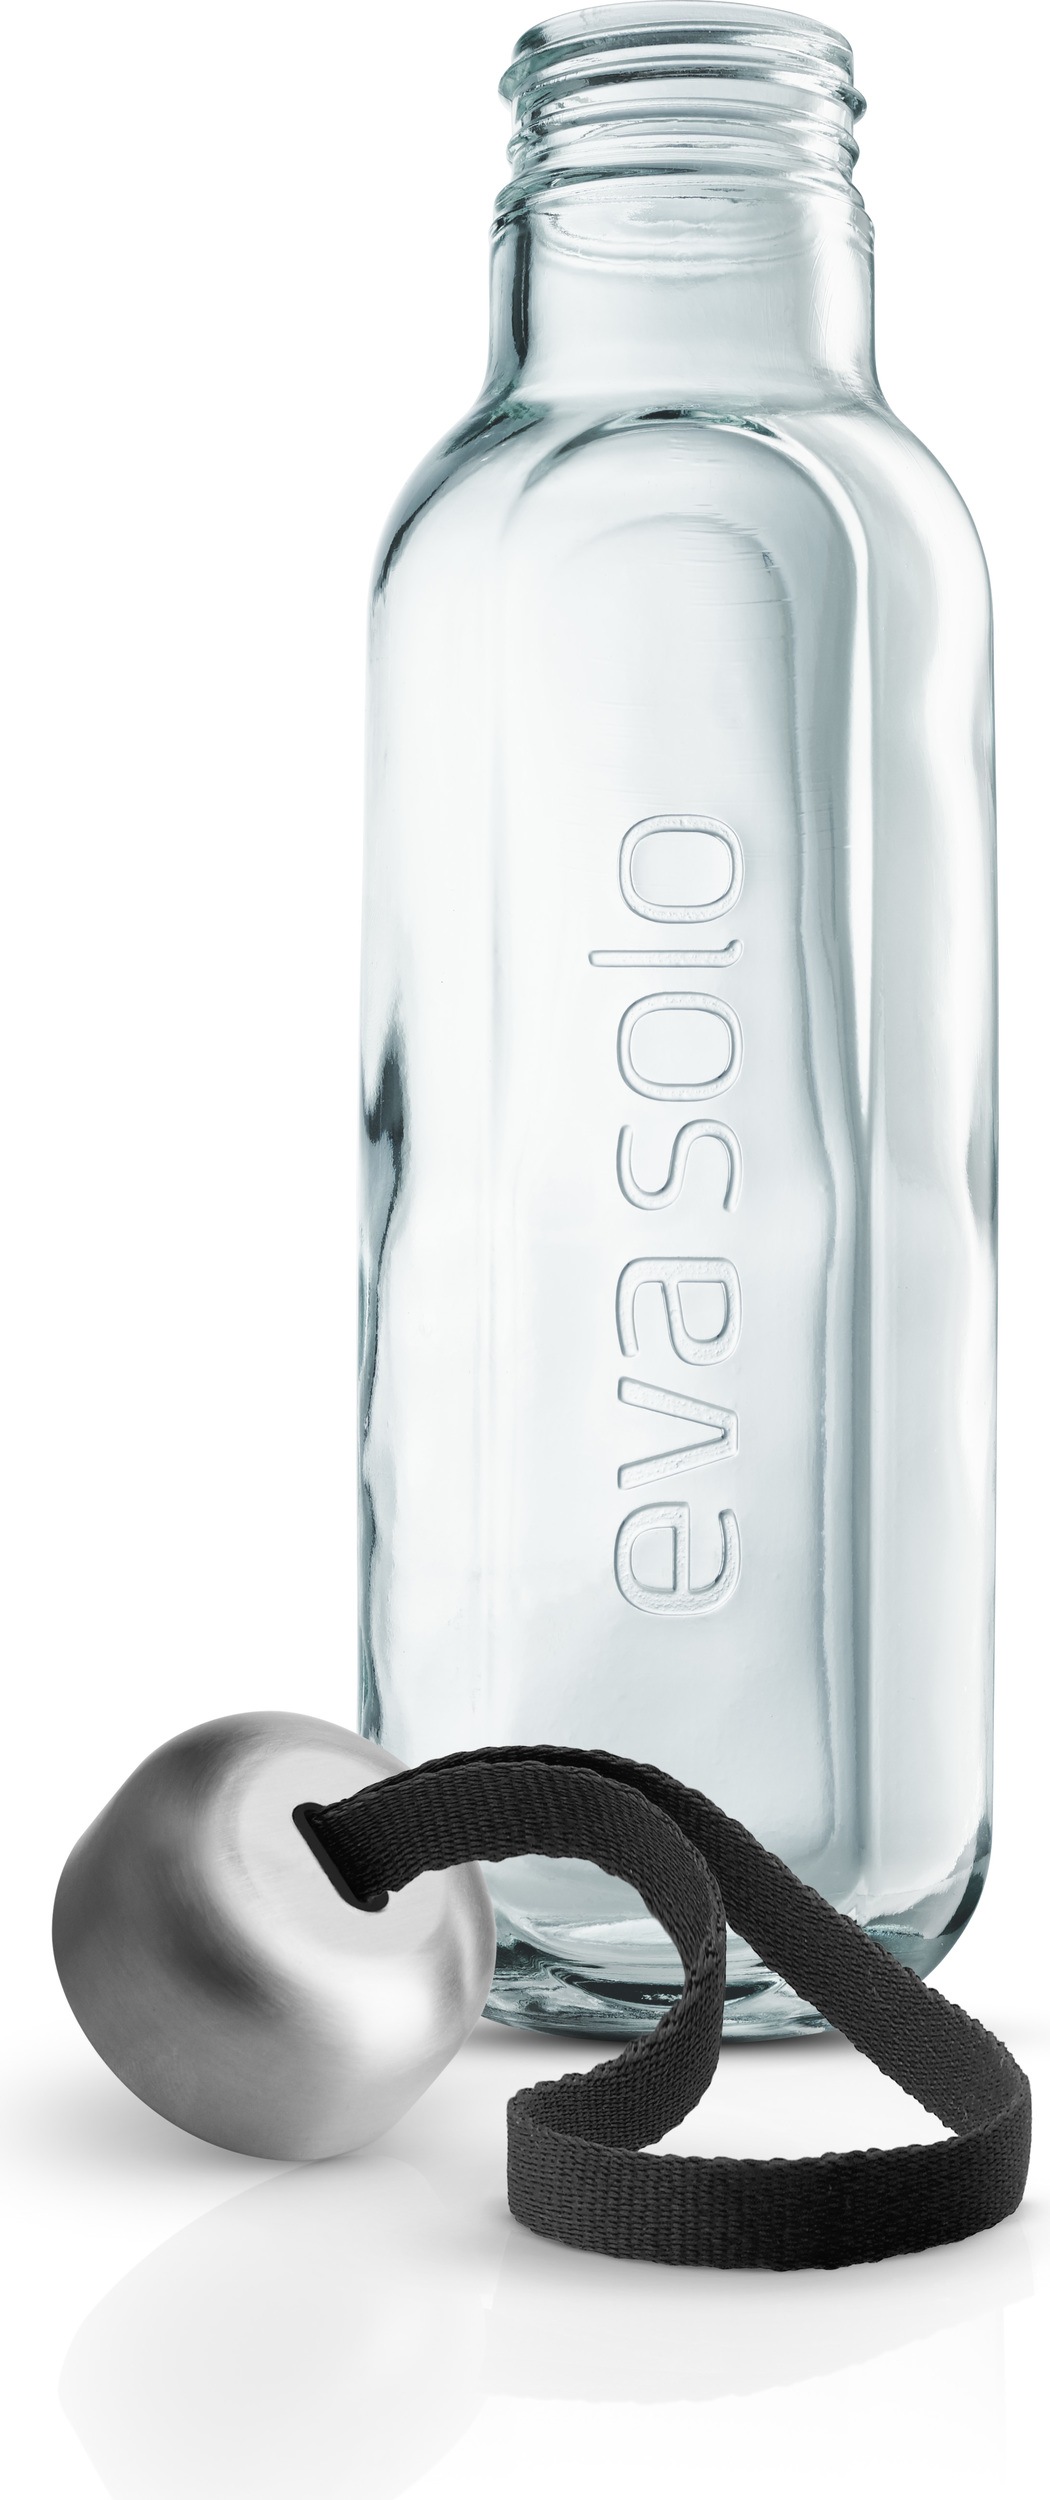 Trinkflasche von Eva Solo hält Getränke kühl - Bild 6 - [SCHÖNER WOHNEN]